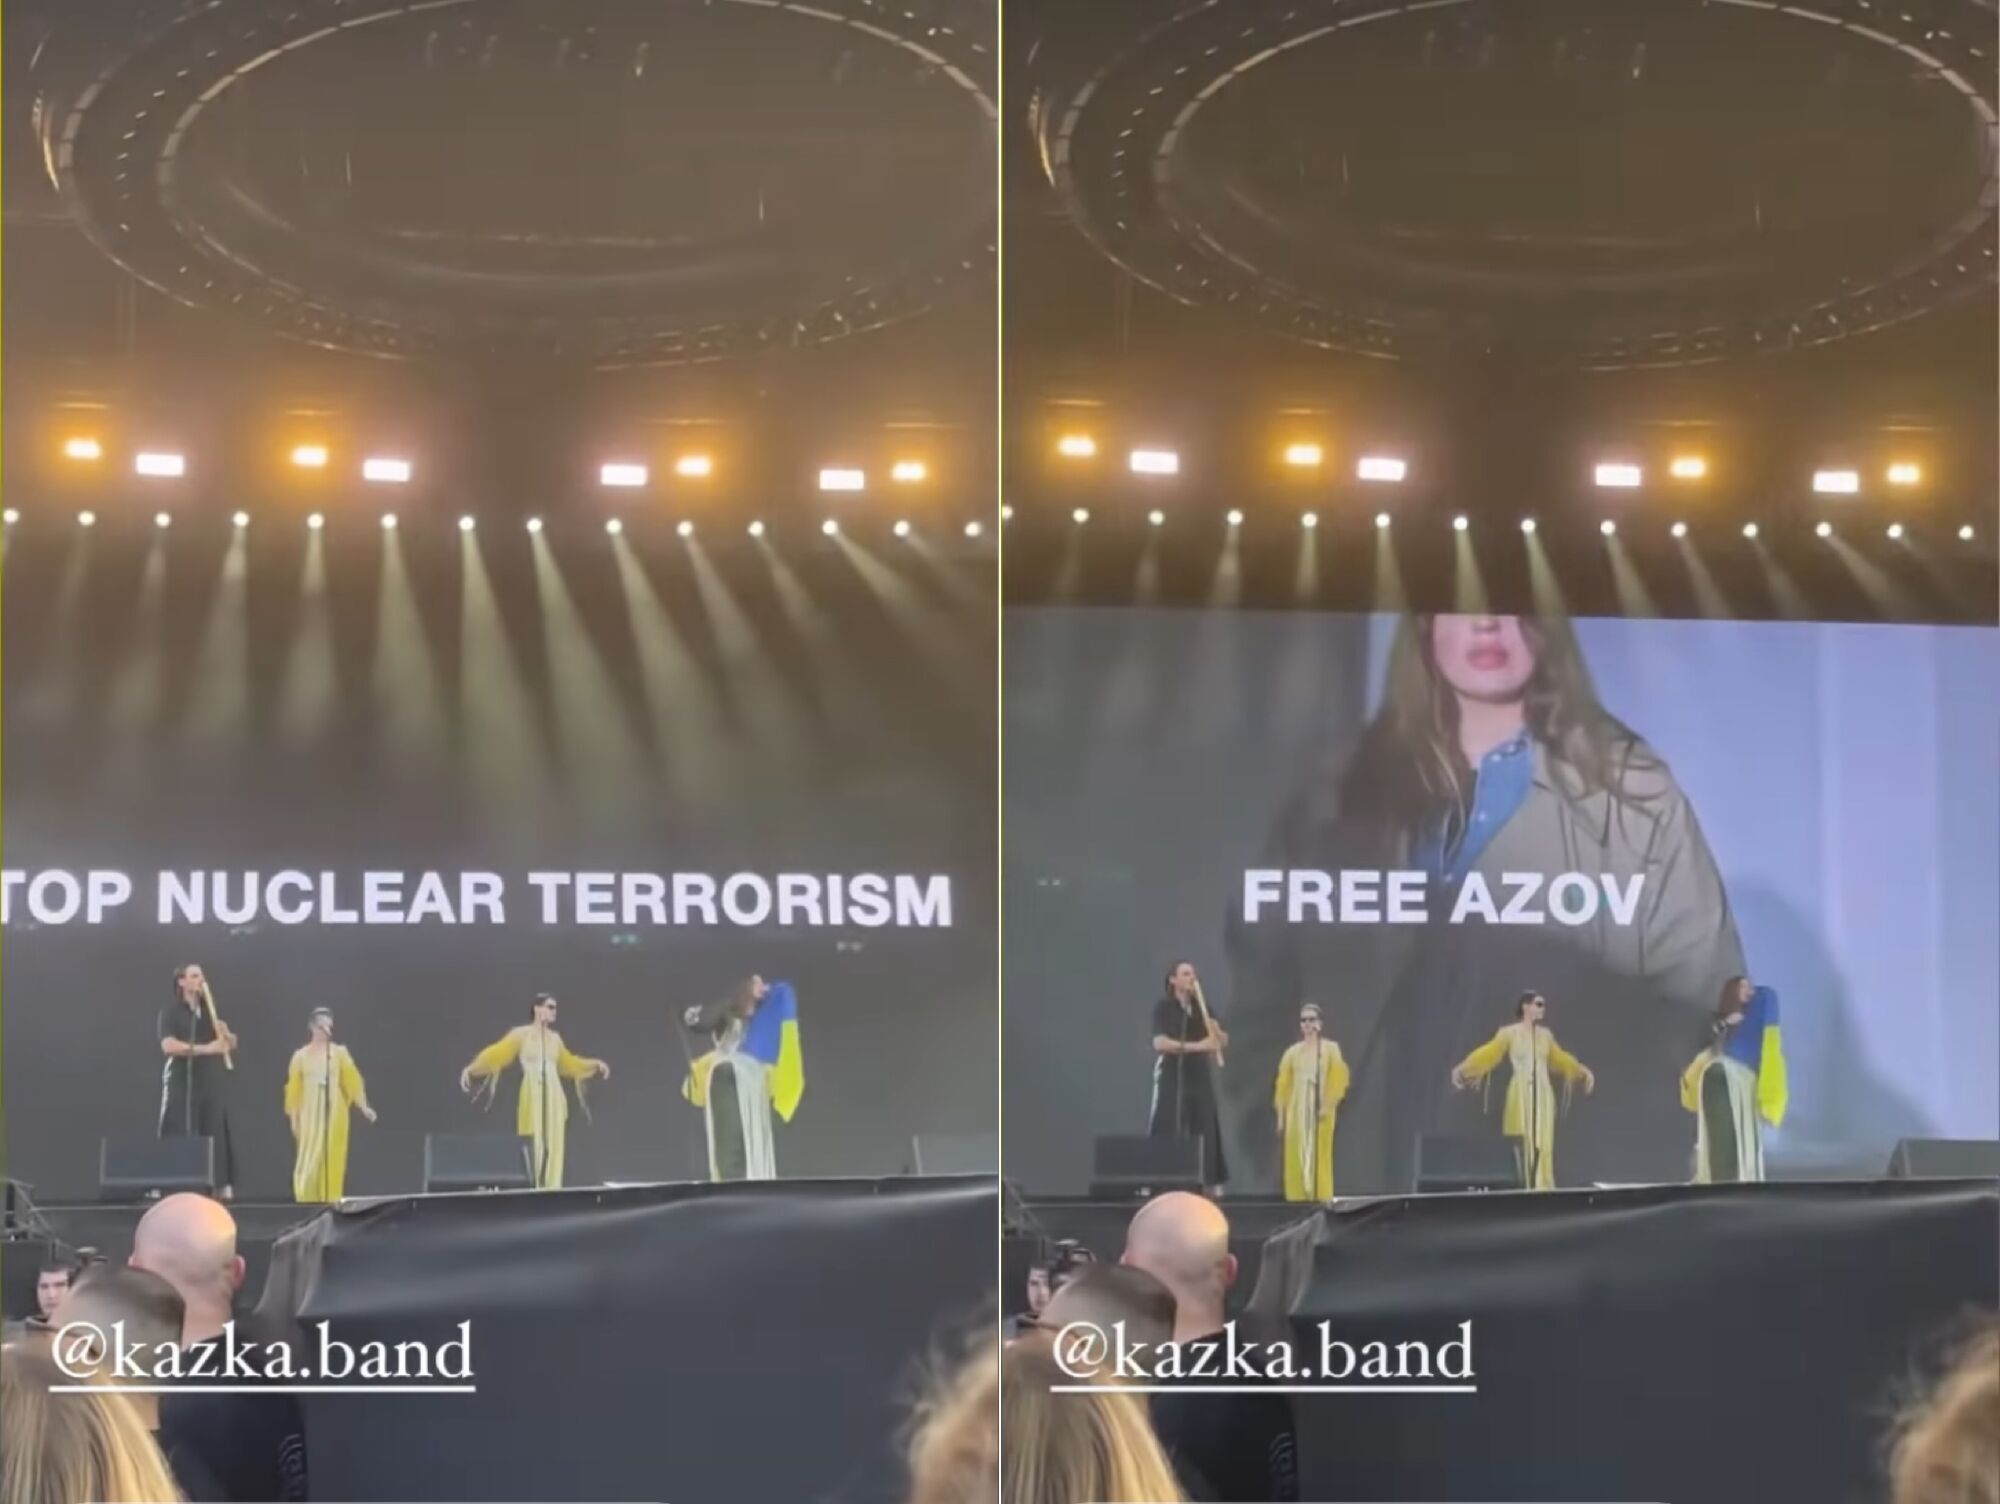 KAZKA выступила на фестивале Sziget, где участвуют россияне: Зарицкая со сцены произнесла антивоенный лозунг